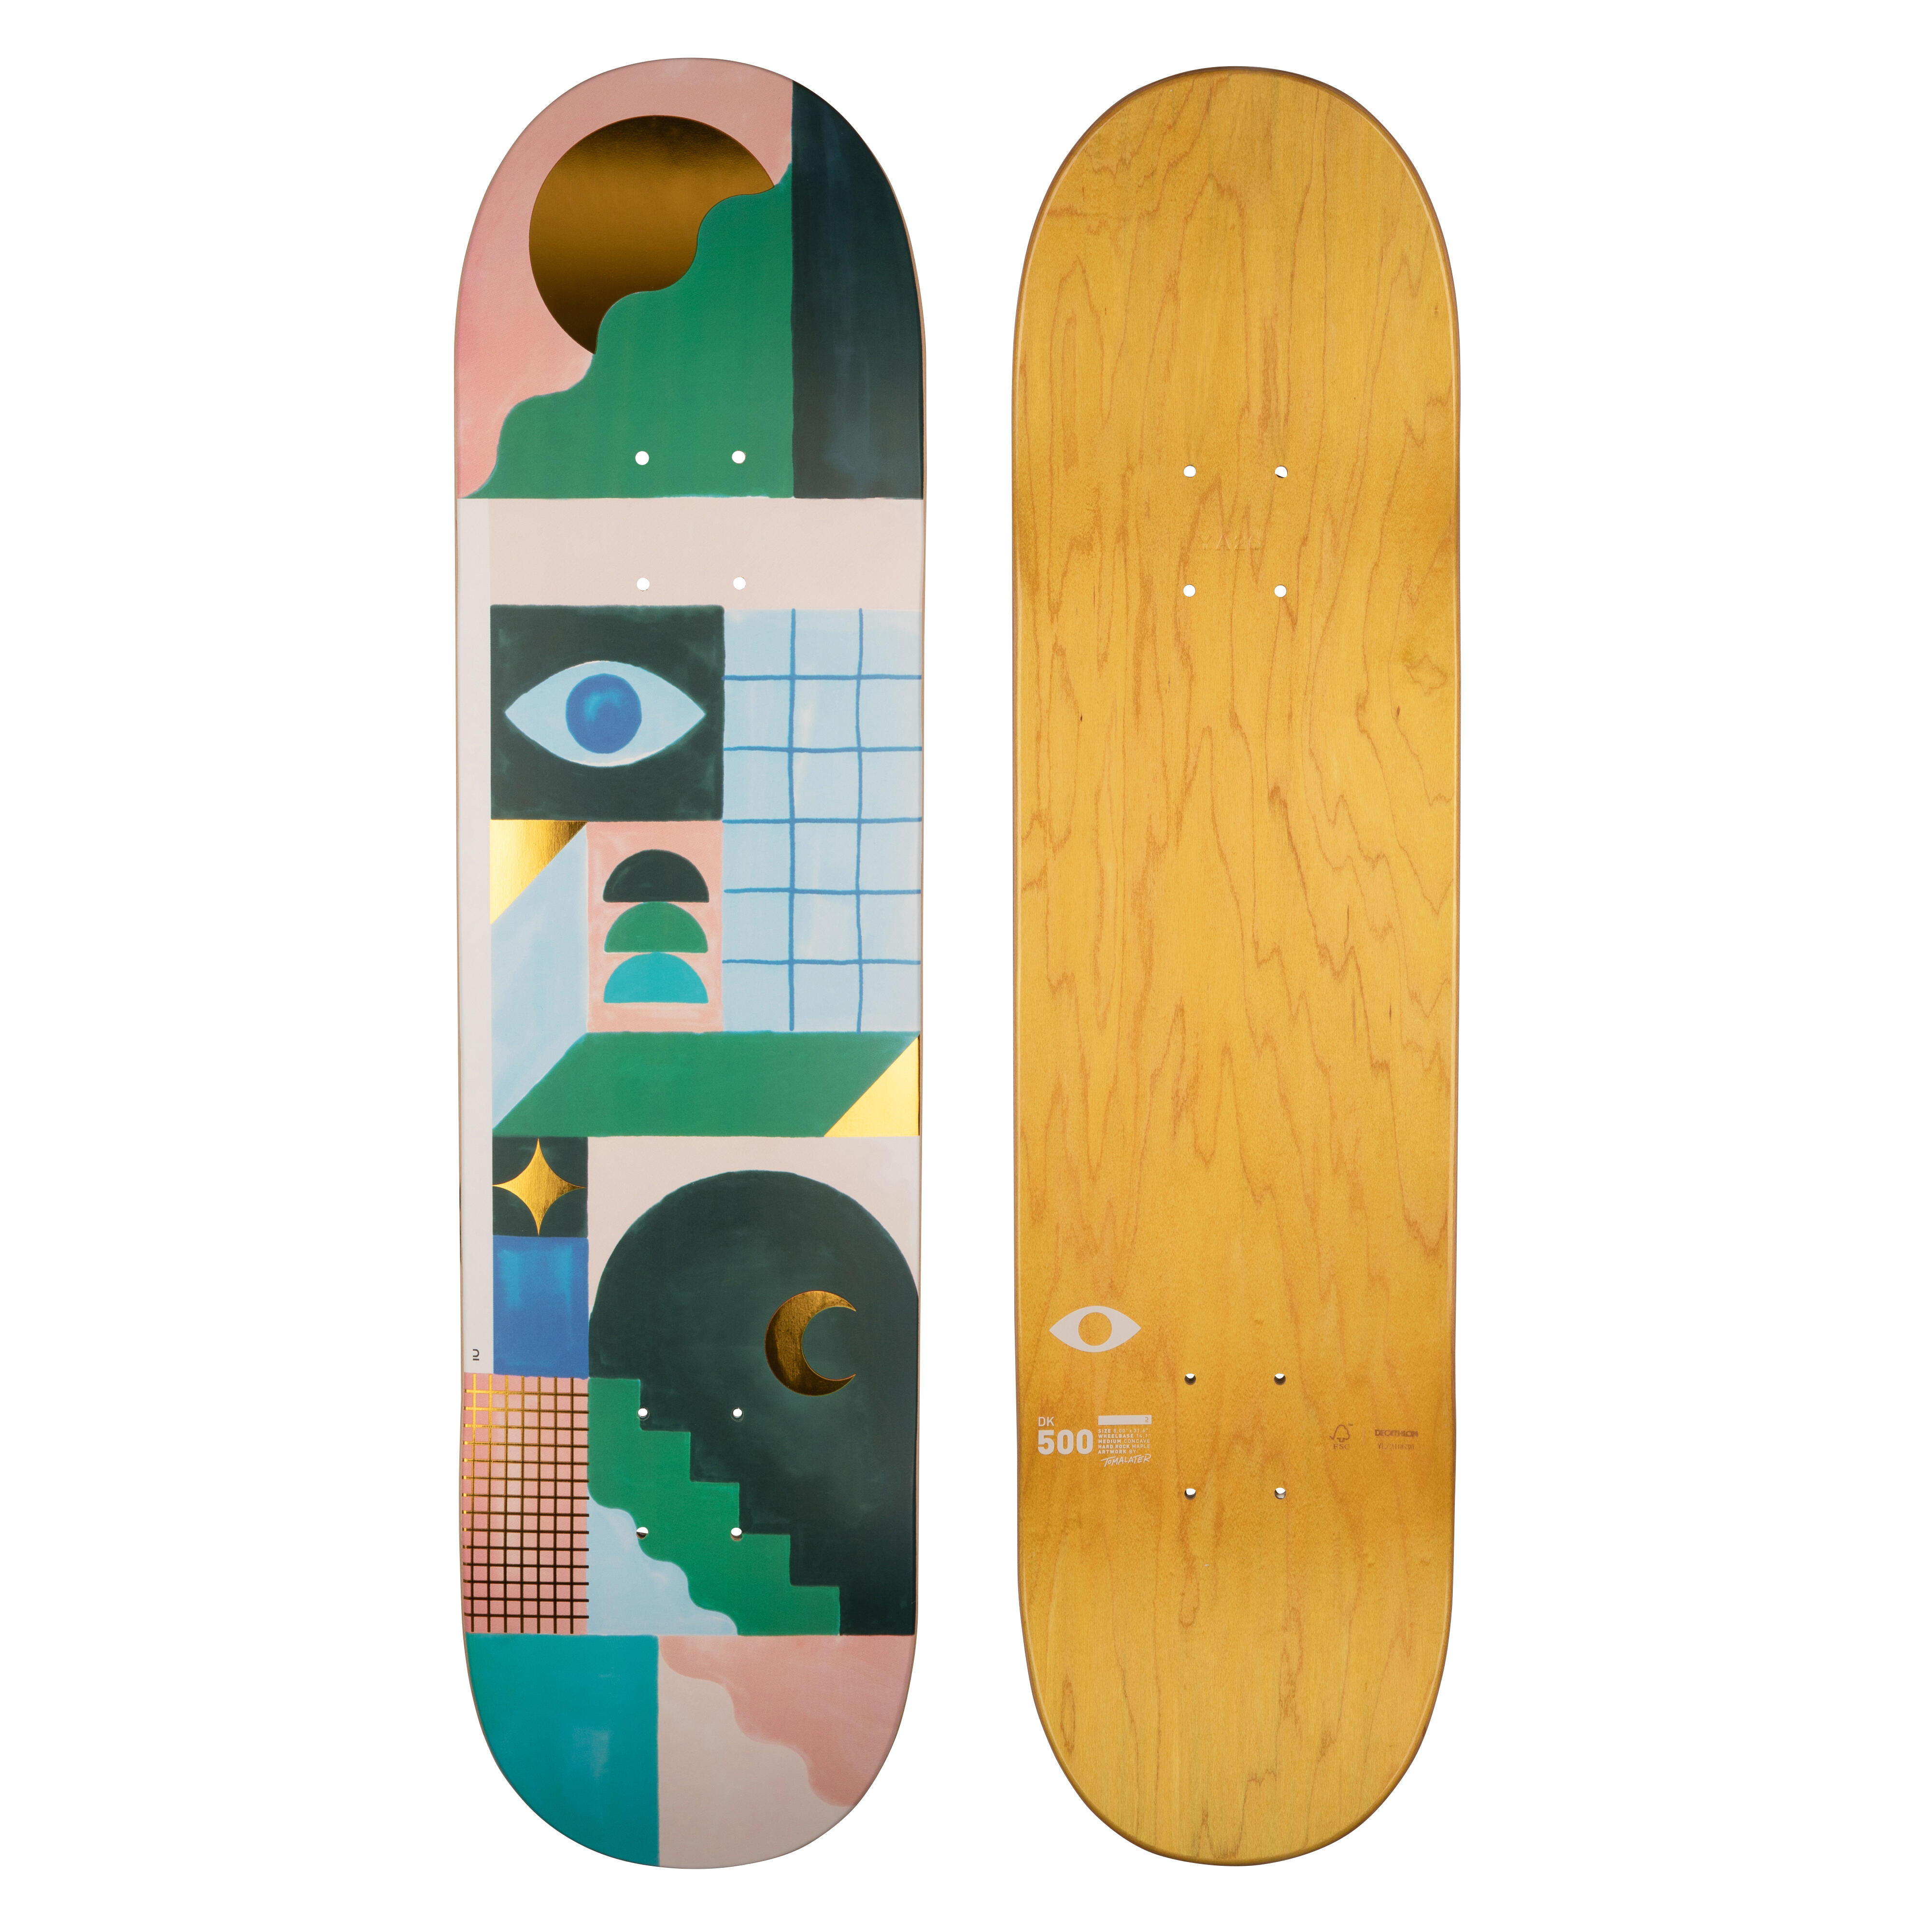 Placă skateboard DK500 Mărimea 8″Grafică de @TOMALATER @TOMALATER  Placi si piese de schimb skateboard